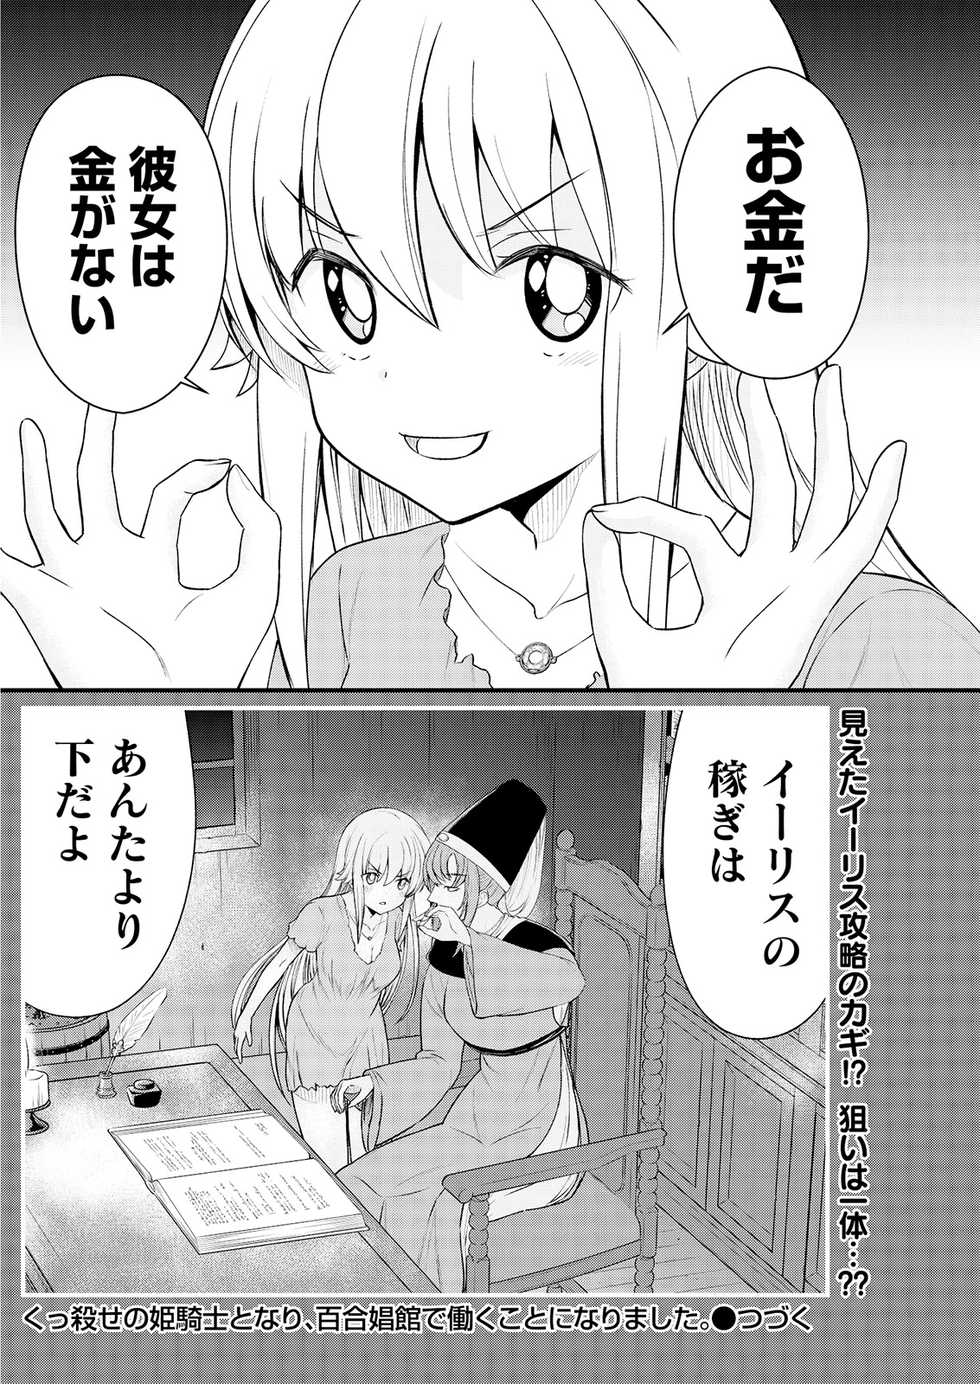 [Hinaki] Kukkorose no Himekishi to nari, Yuri Shoukan de Hataraku koto ni Narimashita. 9 - Page 22